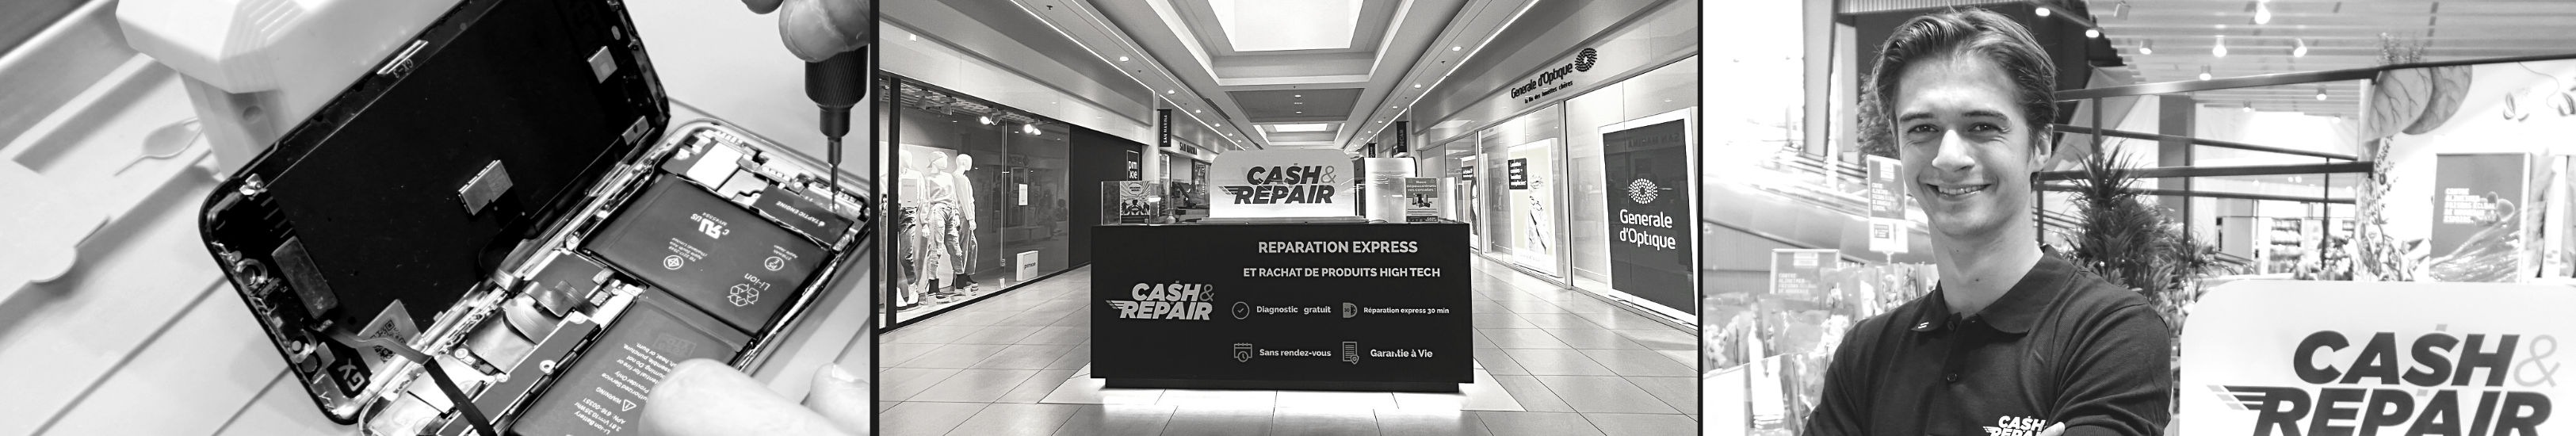 - Atelier de réparation Cash and Repair La Roche-sur-Yon Oudairies